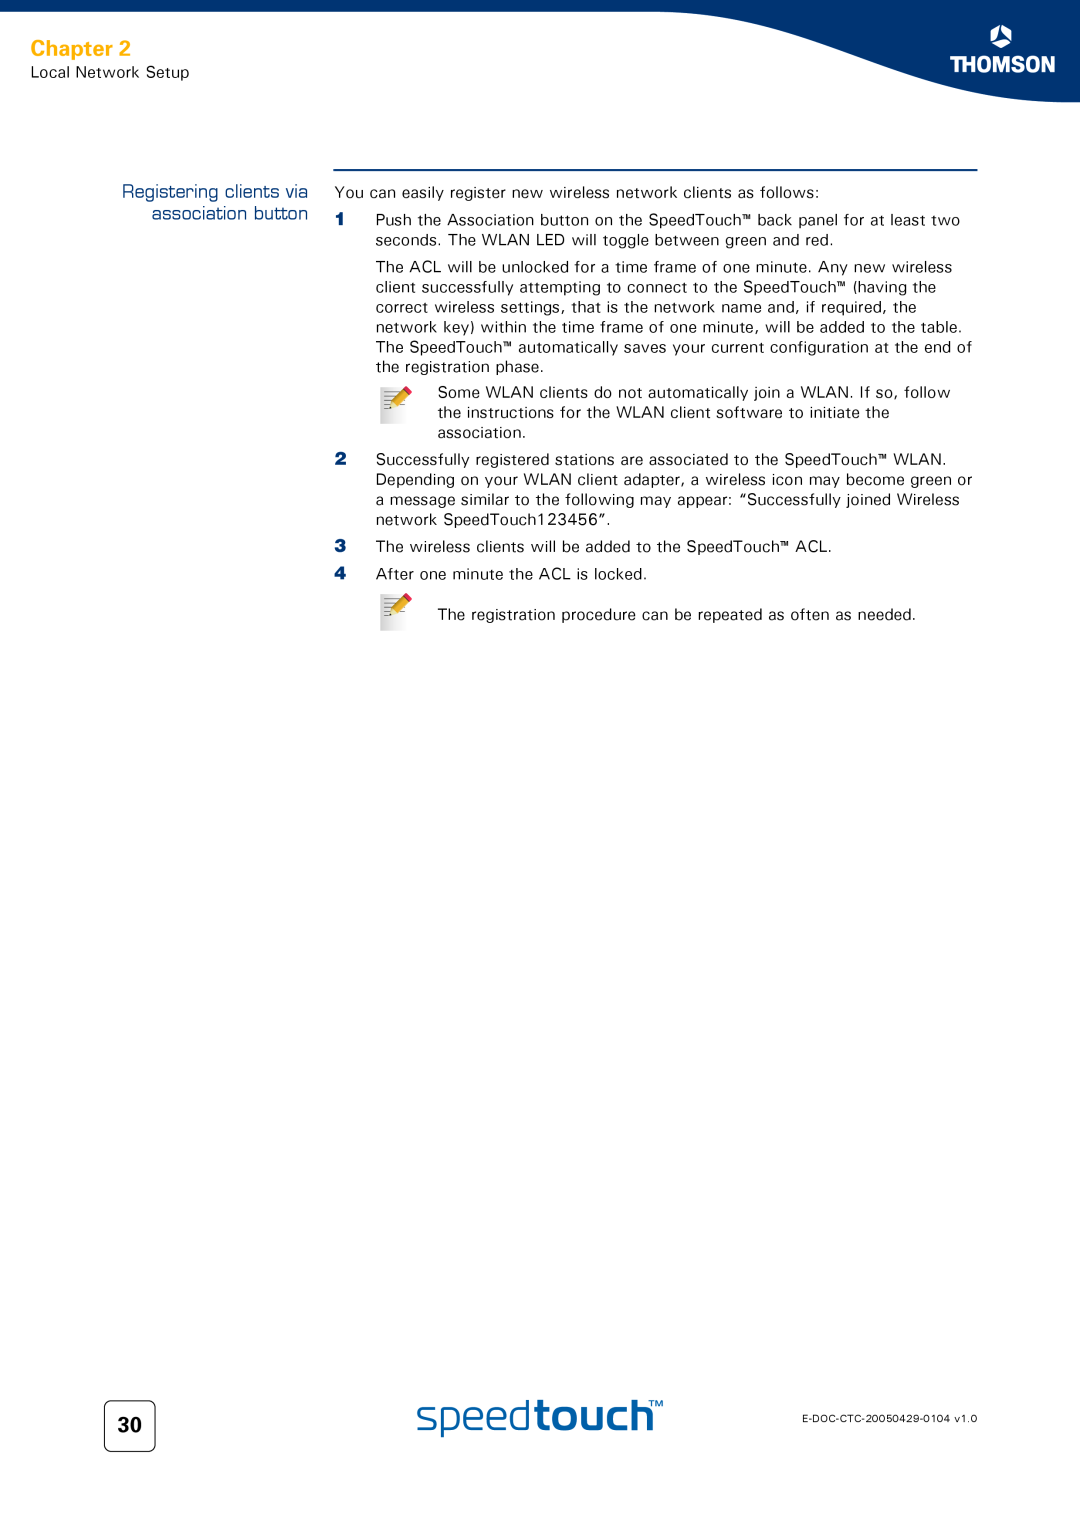 Technicolor - Thomson 620, 605, 608 WL manual Registering clients via association button, Chapter 